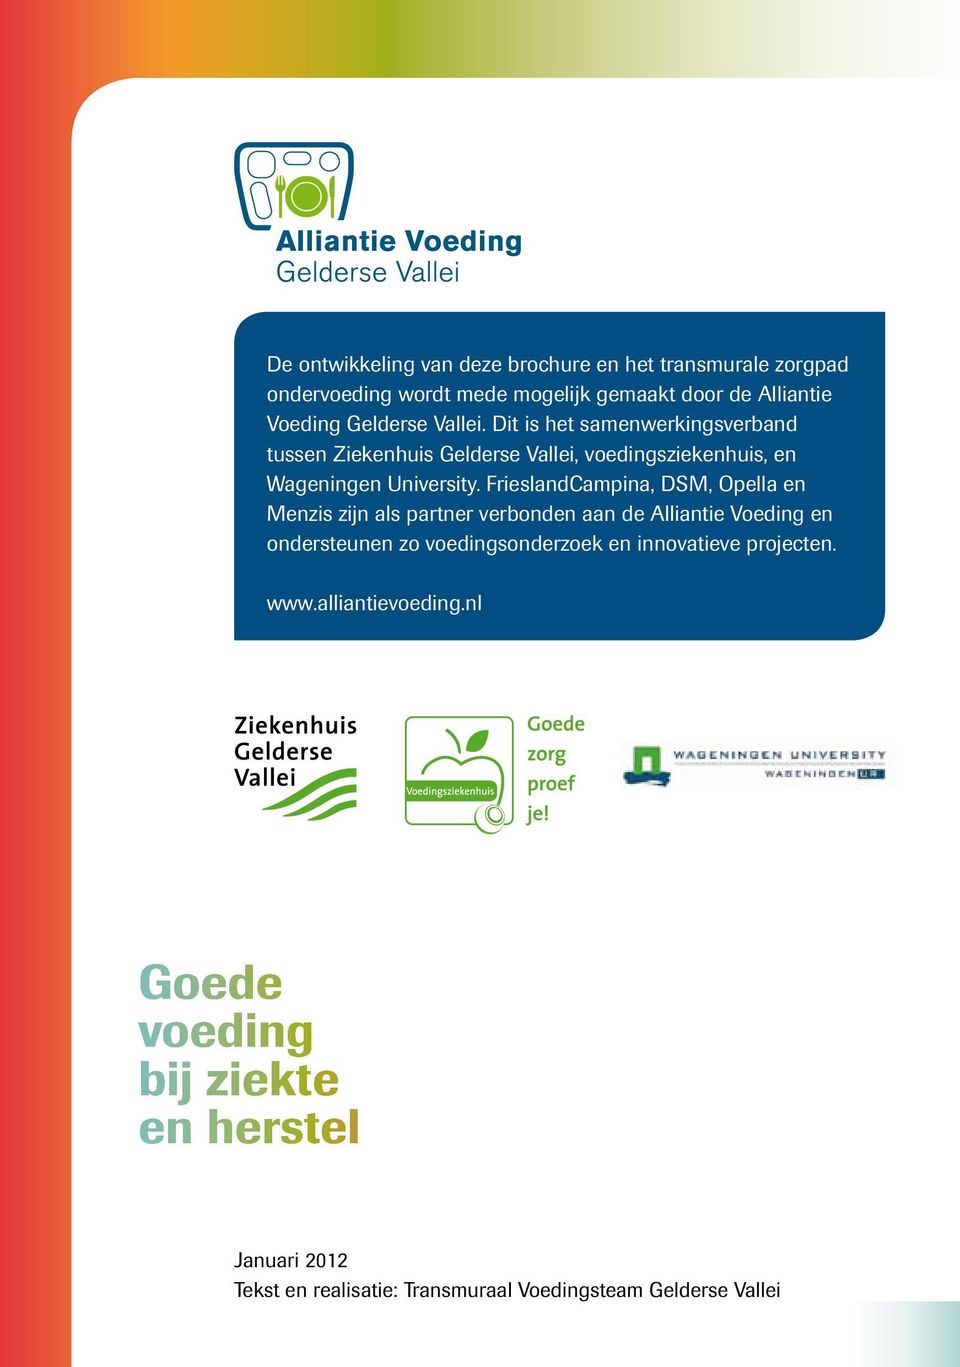 FrieslandCampina, DSM, Opella en Menzis zijn als partner verbonden aan de Alliantie Voeding en ondersteunen zo voedingsonderzoek en